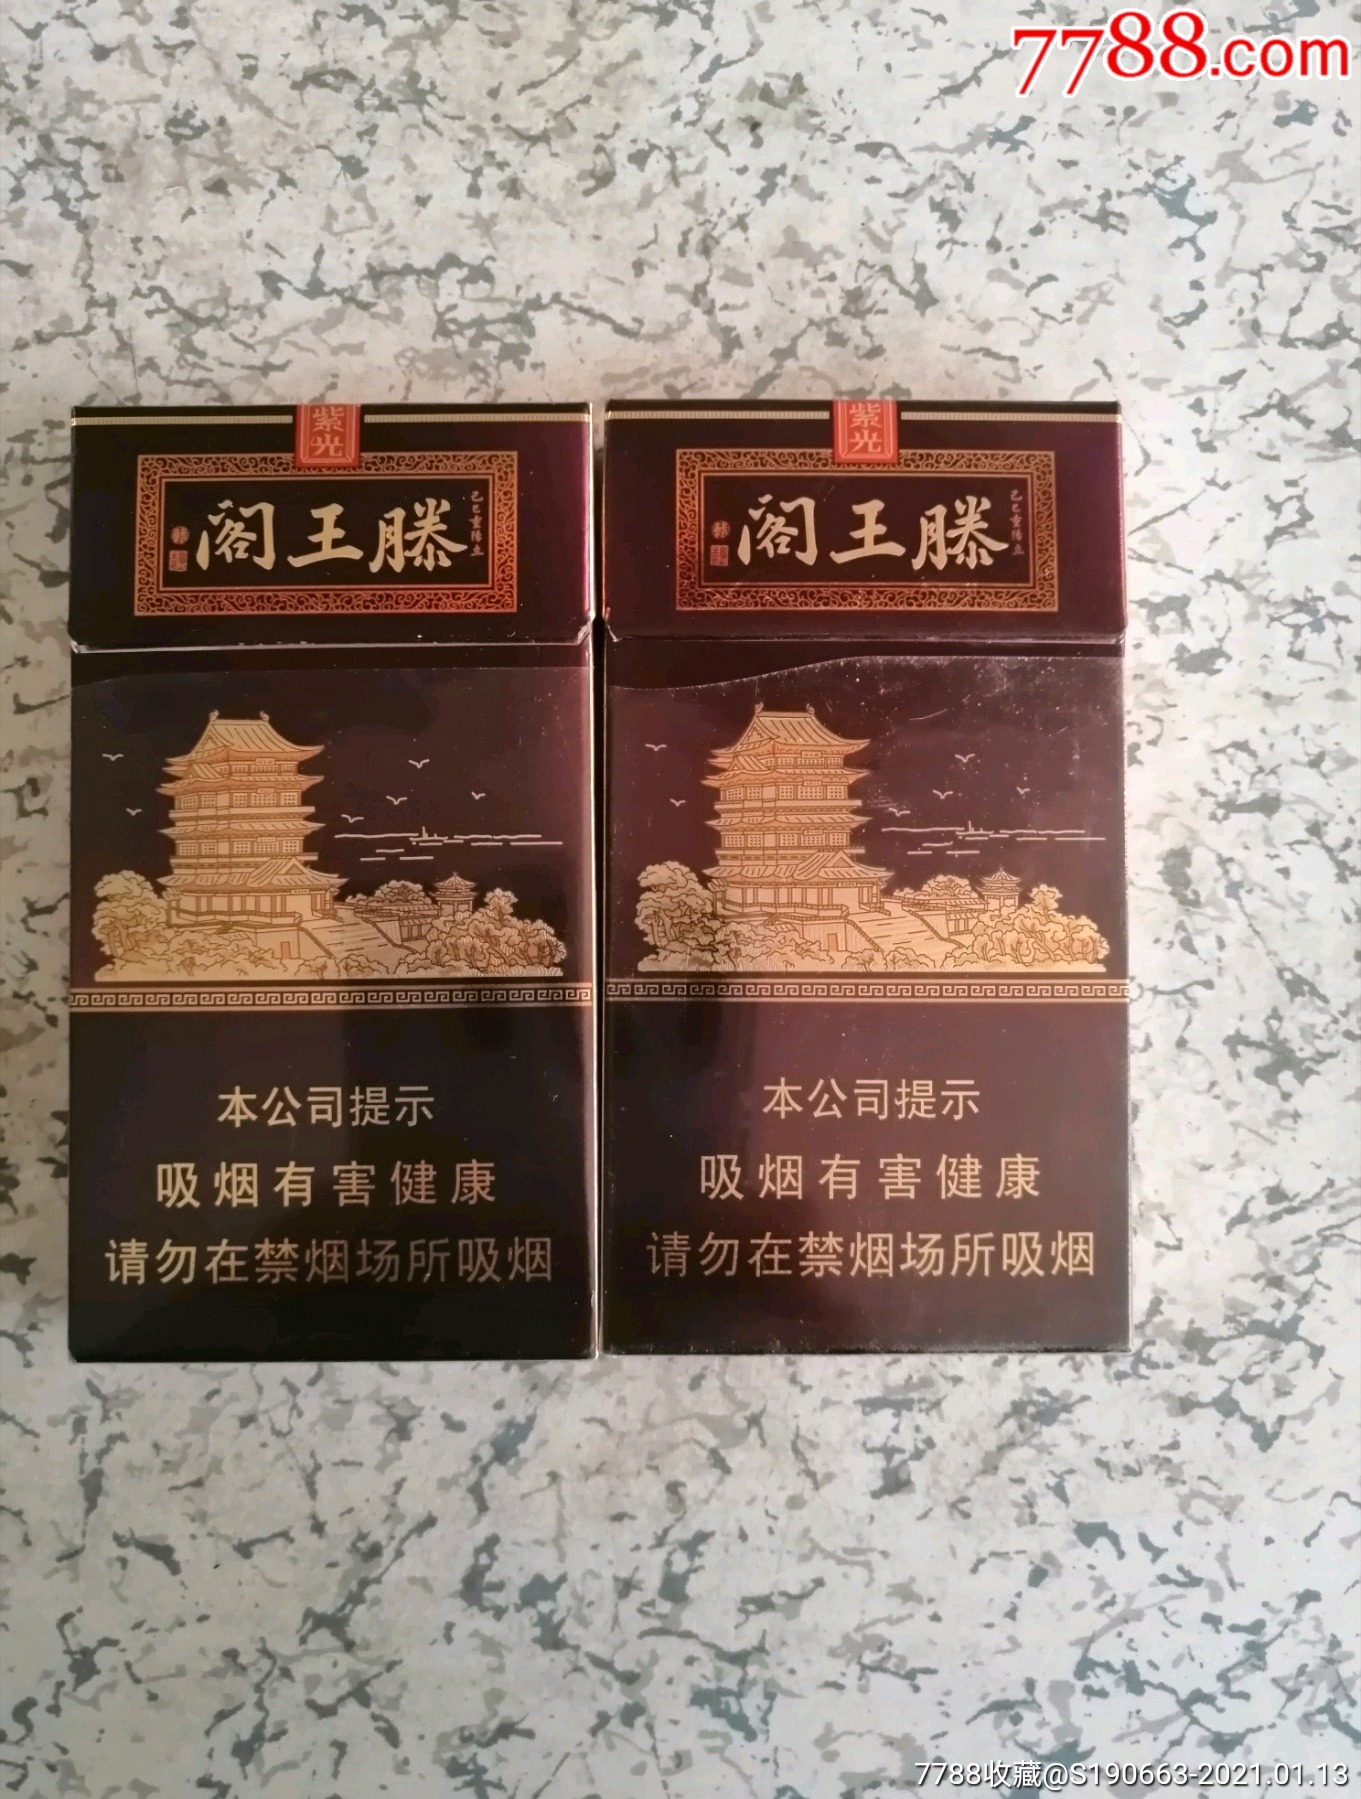 滕王阁香烟紫光多少钱图片